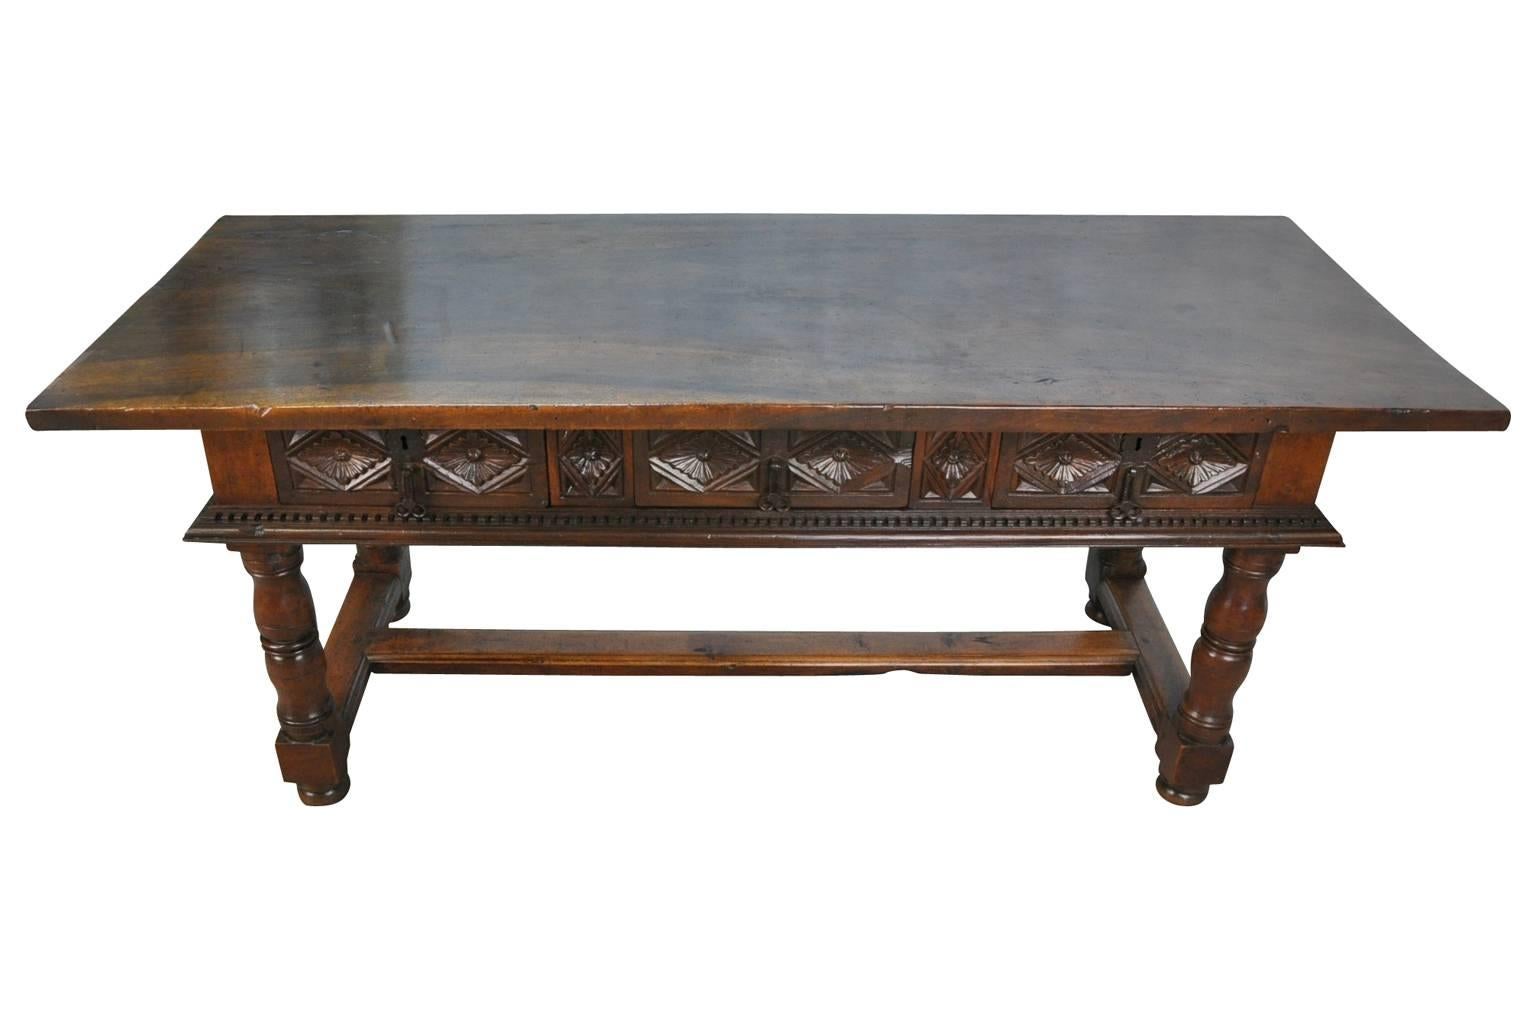 Ein hervorragender Reflectoire-Tisch oder Schreibtisch aus dem 18. Jahrhundert aus der katalanischen Region in Spanien. Meisterhaft konstruiert aus Nussbaumholz mit einer atemberaubenden Massivholzplatte. Wunderschöne Patina.... Dieser Tisch eignet